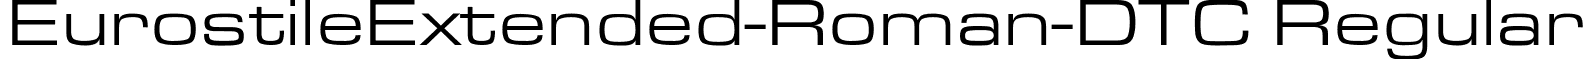 EurostileExtended-Roman-DTC Regular font - EUROSTI3.ttf